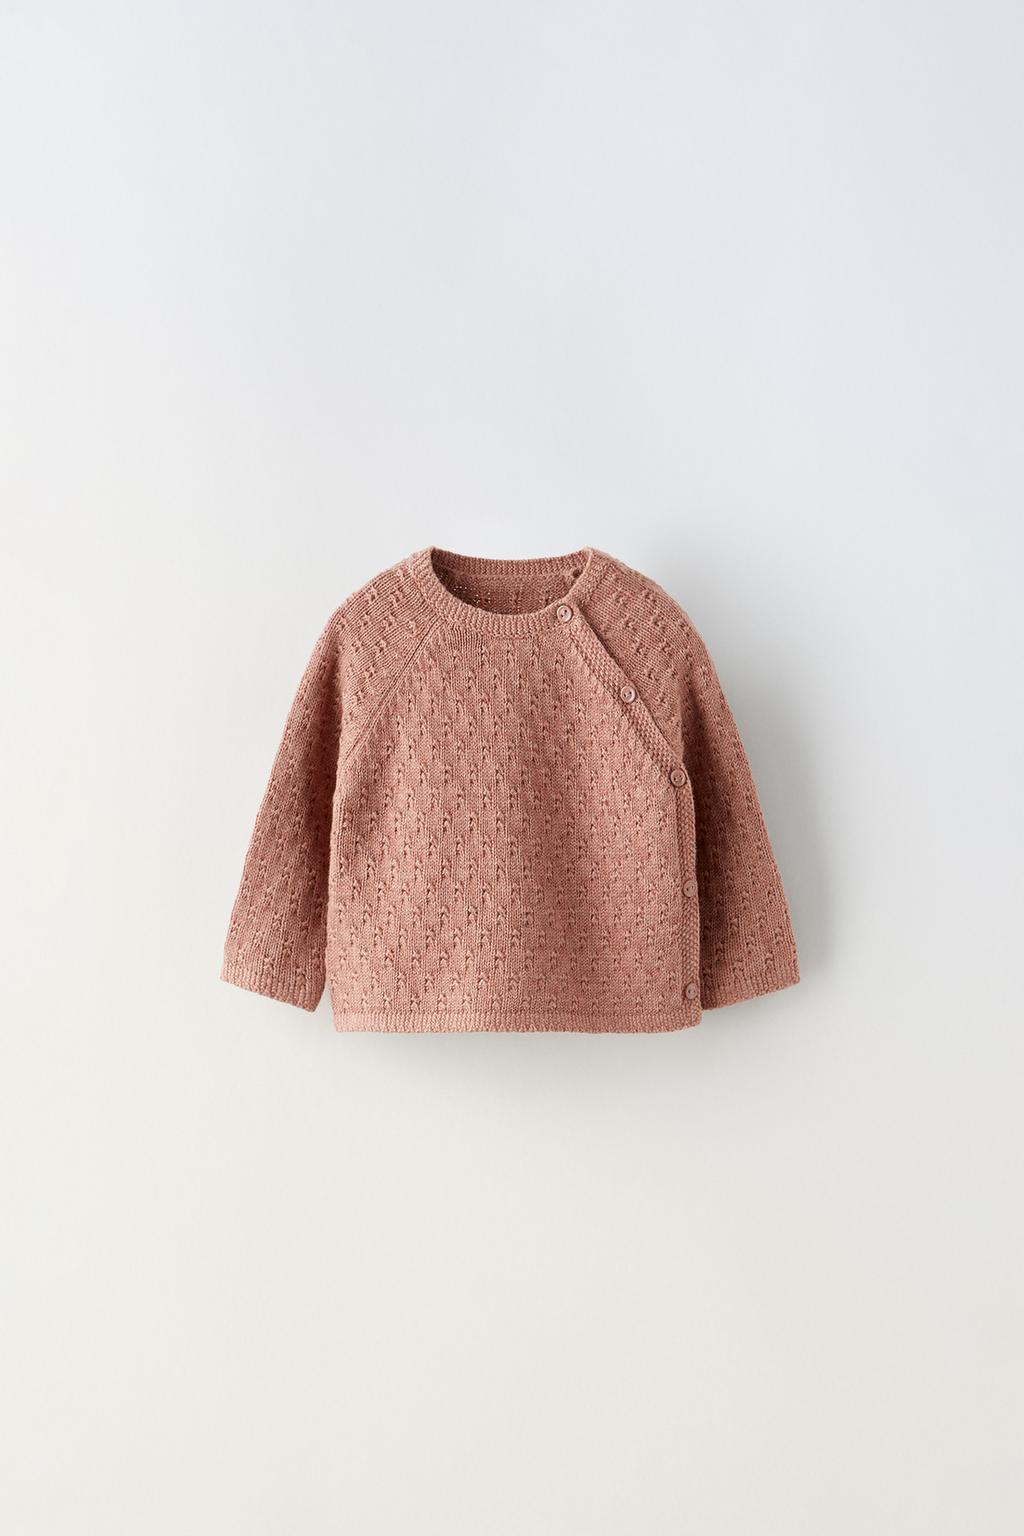 Трикотажный свитер с текстурной трикотажей ZARA, розовый трикотажный свитер с тканой отделкой zara бежево розовый